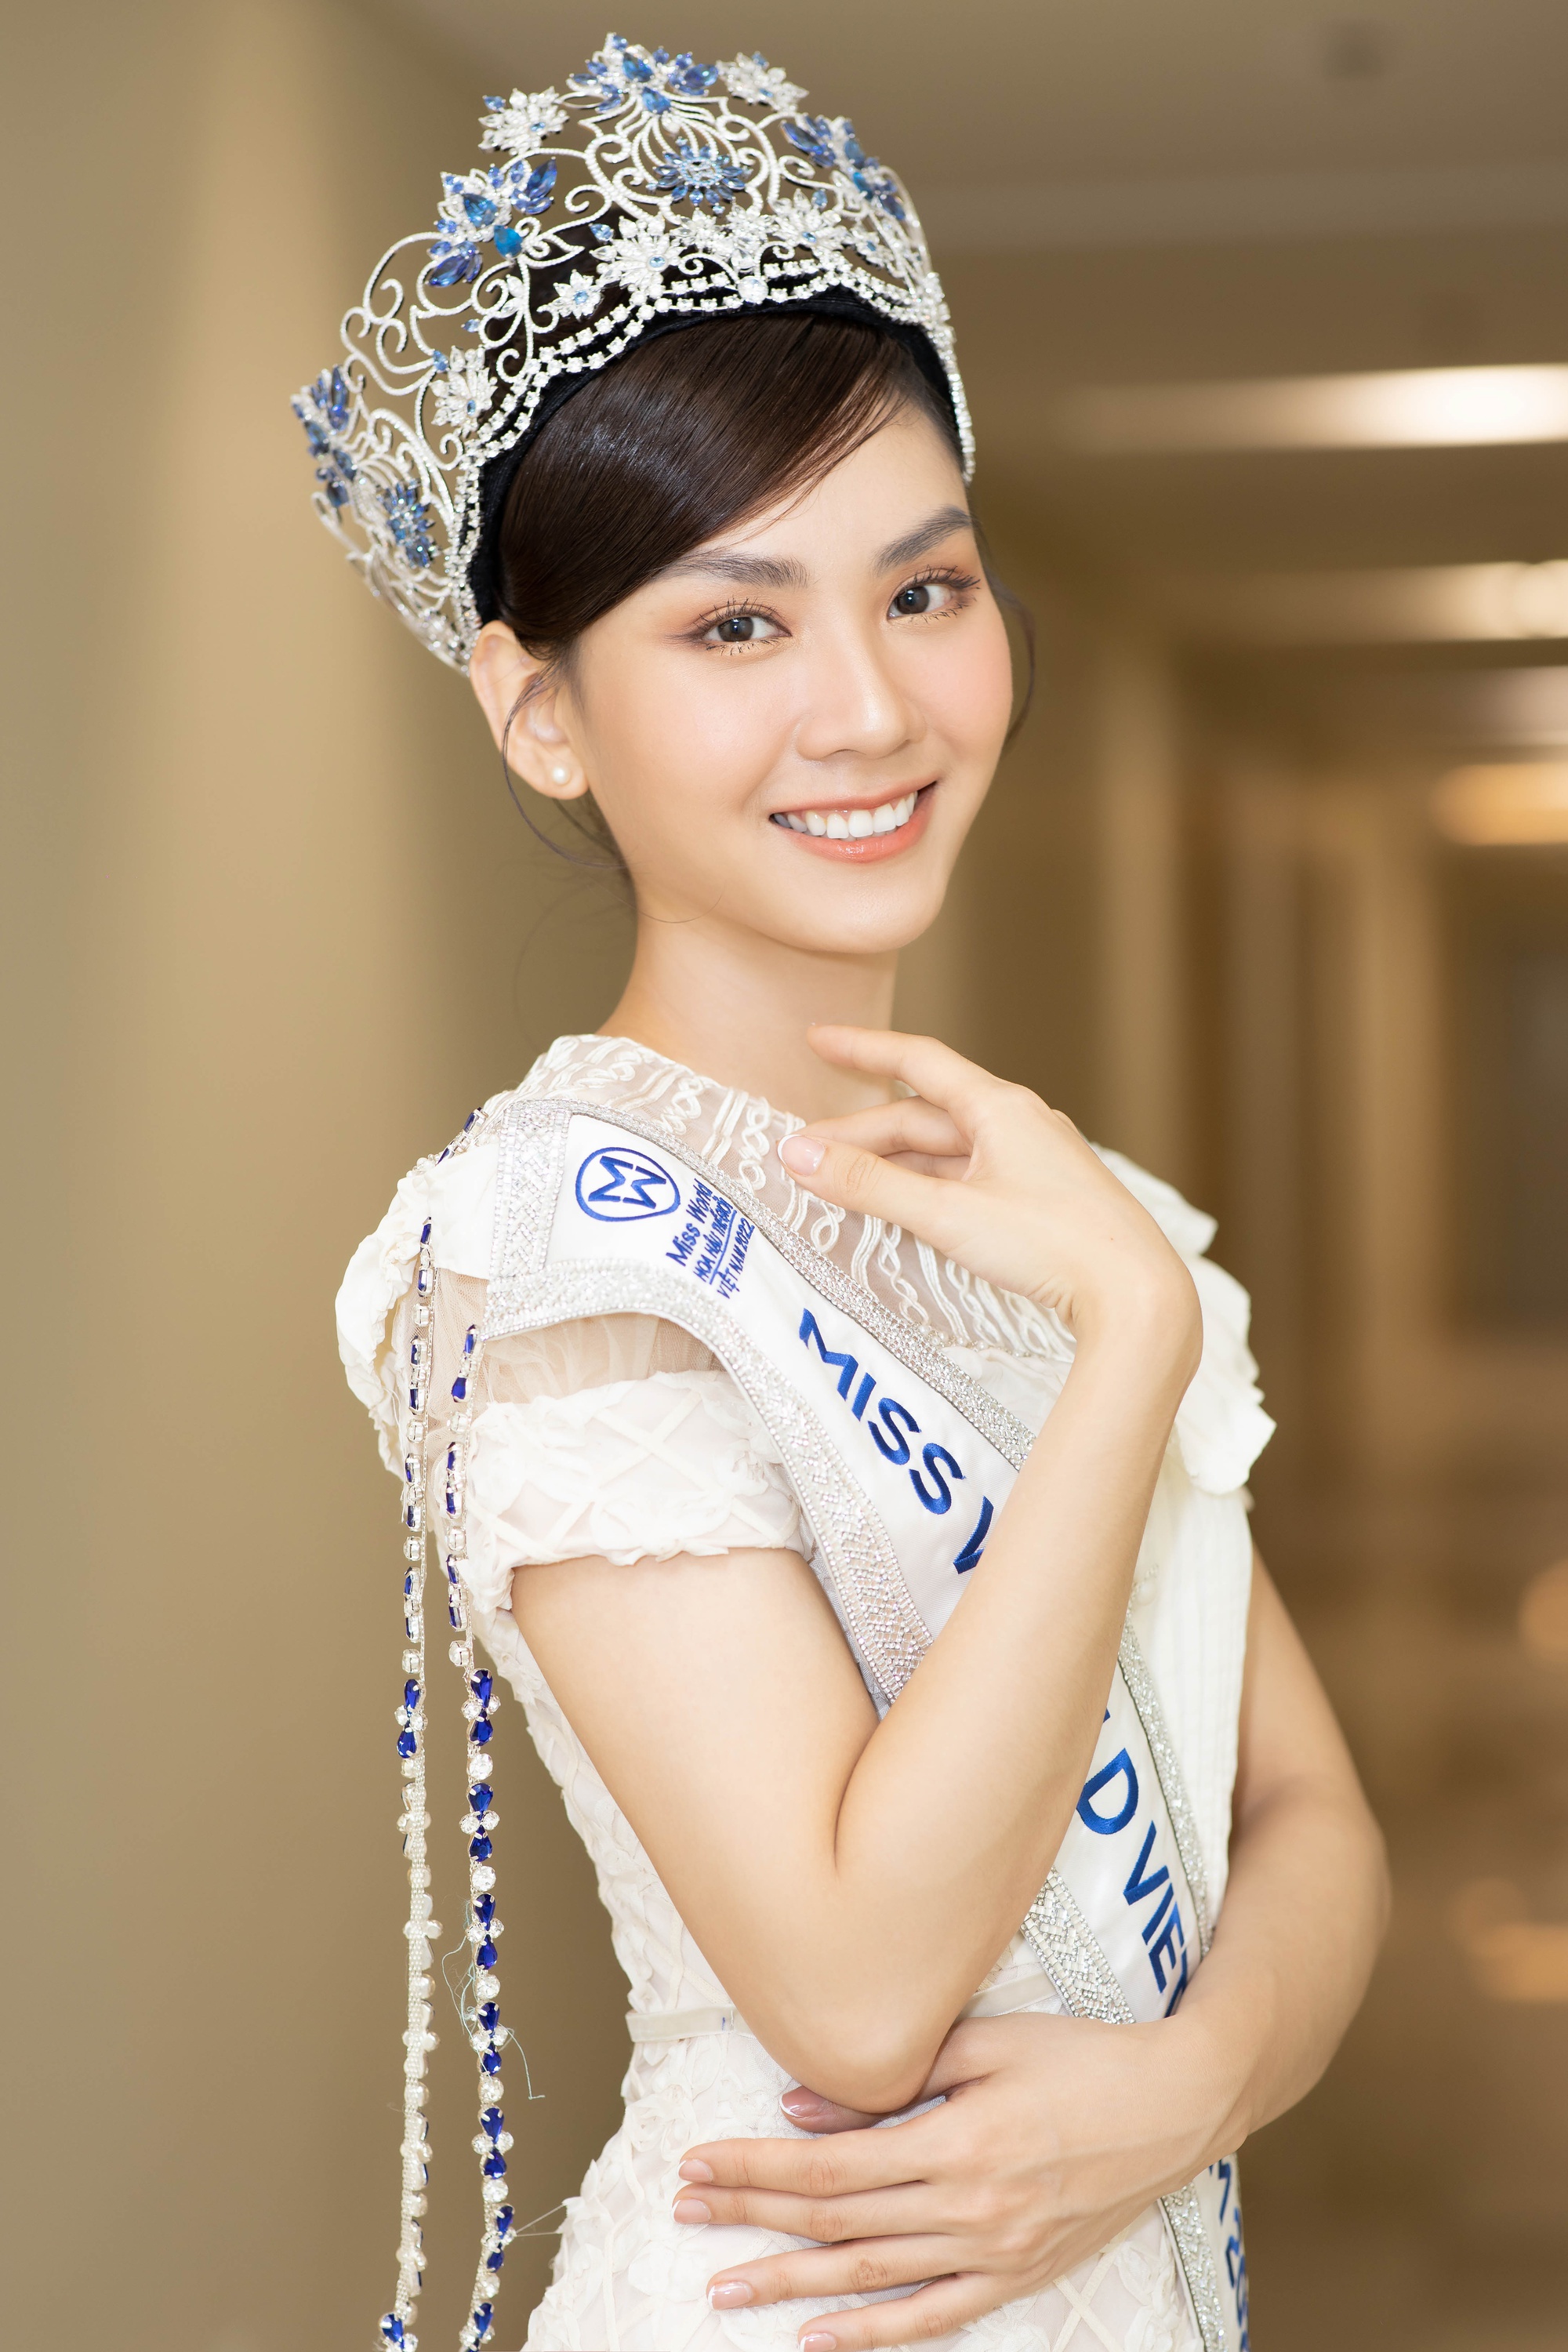 Hoa hậu Mai Phương phản hồi tin được dọn đường để đăng quang - Ảnh 4.